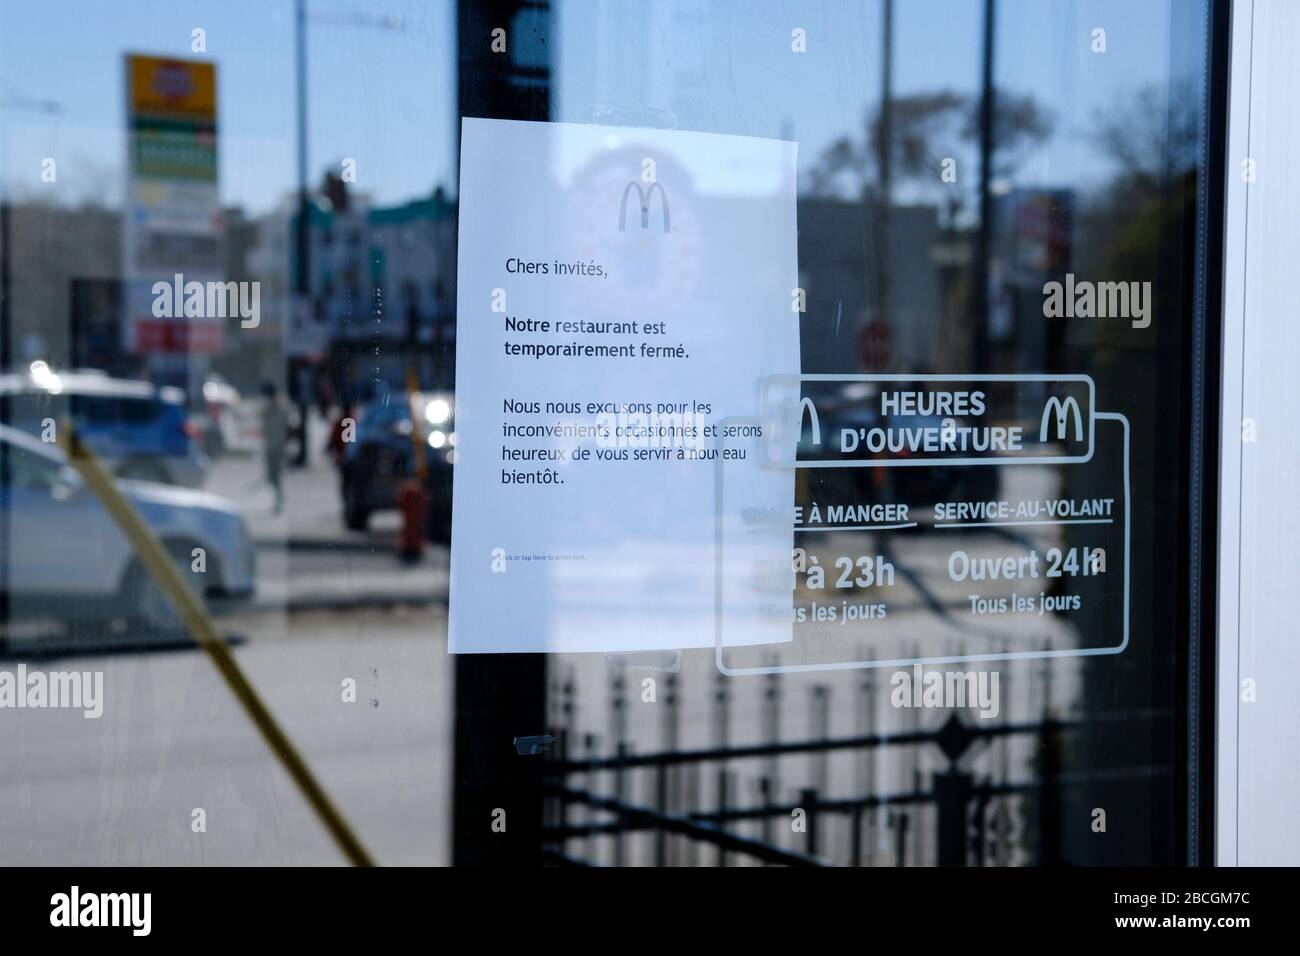 Montreal, Quebec, Canadá. 4 de abril de 2020. Tercer restaurante McDonald's  en la isla de Montreal para cerrar después de que uno de sus empleados  probó positivo para Covid19. McDonald's anunció que